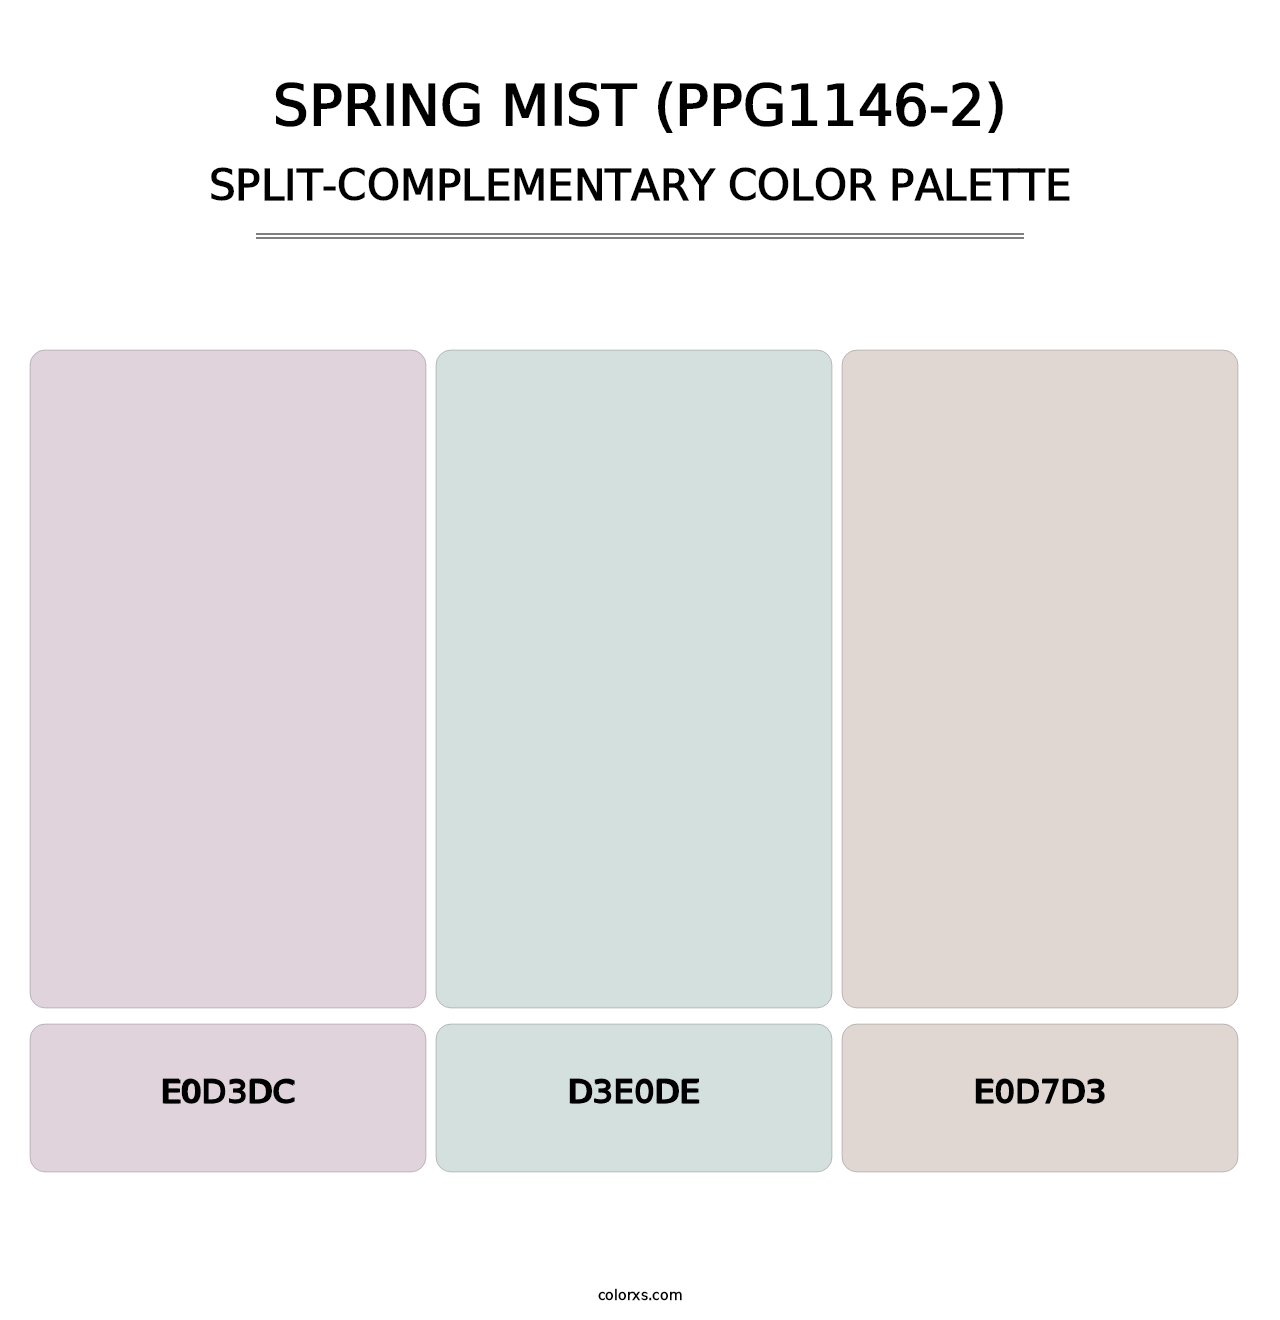 Spring Mist (PPG1146-2) - Split-Complementary Color Palette